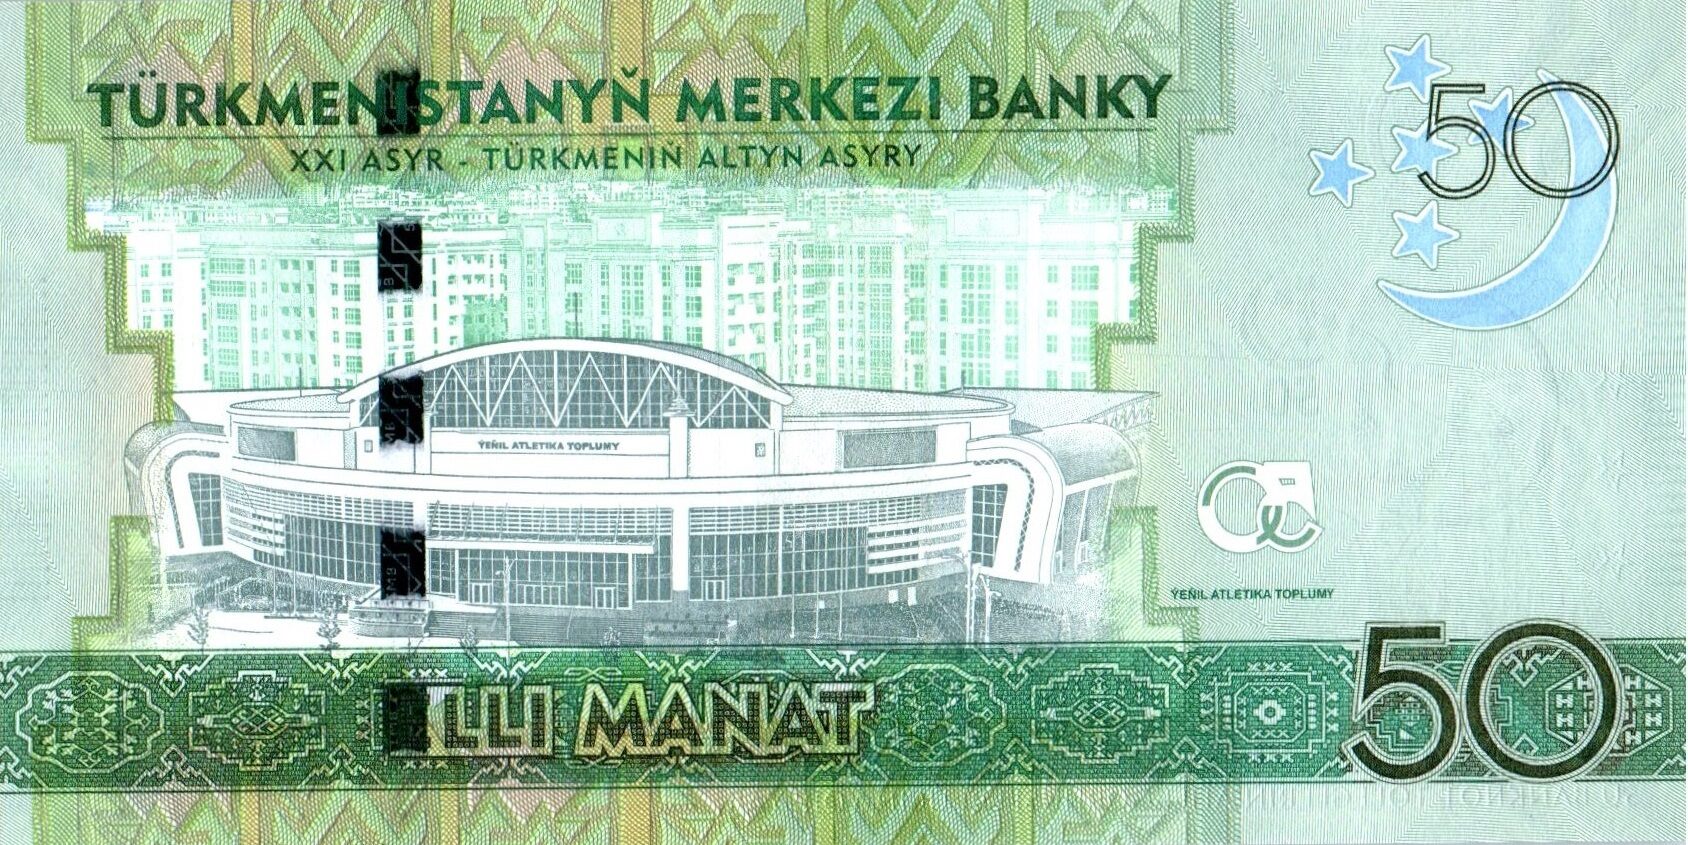 50 Манат. Туркменский манат. 3 маната в рублях